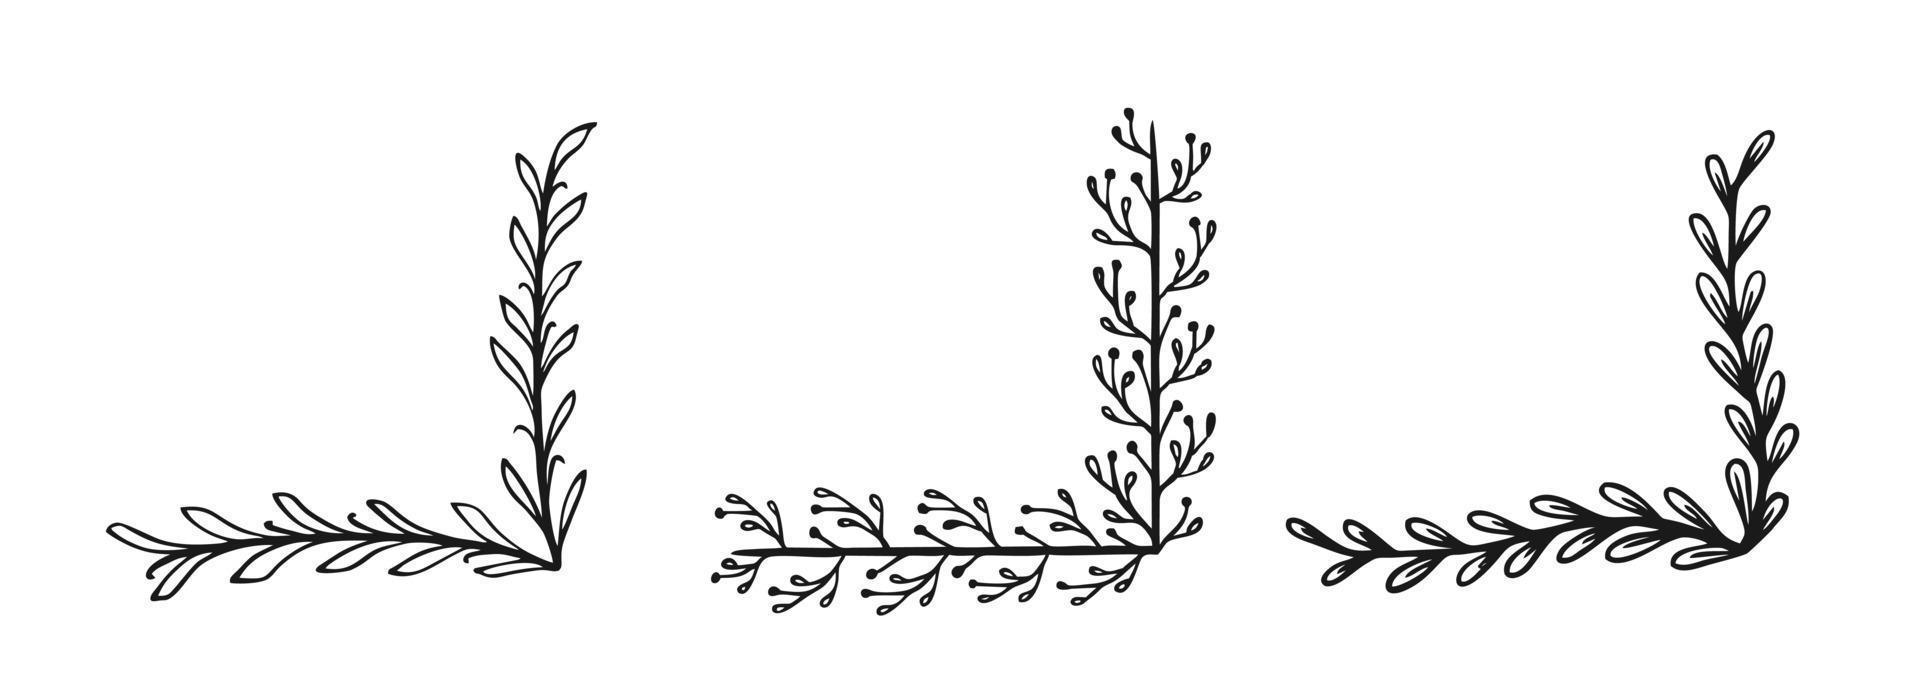 marco de esquina dibujado en estilo garabato aislado en un fondo blanco un conjunto de marcos dibujar a mano ilustración vectorial vector